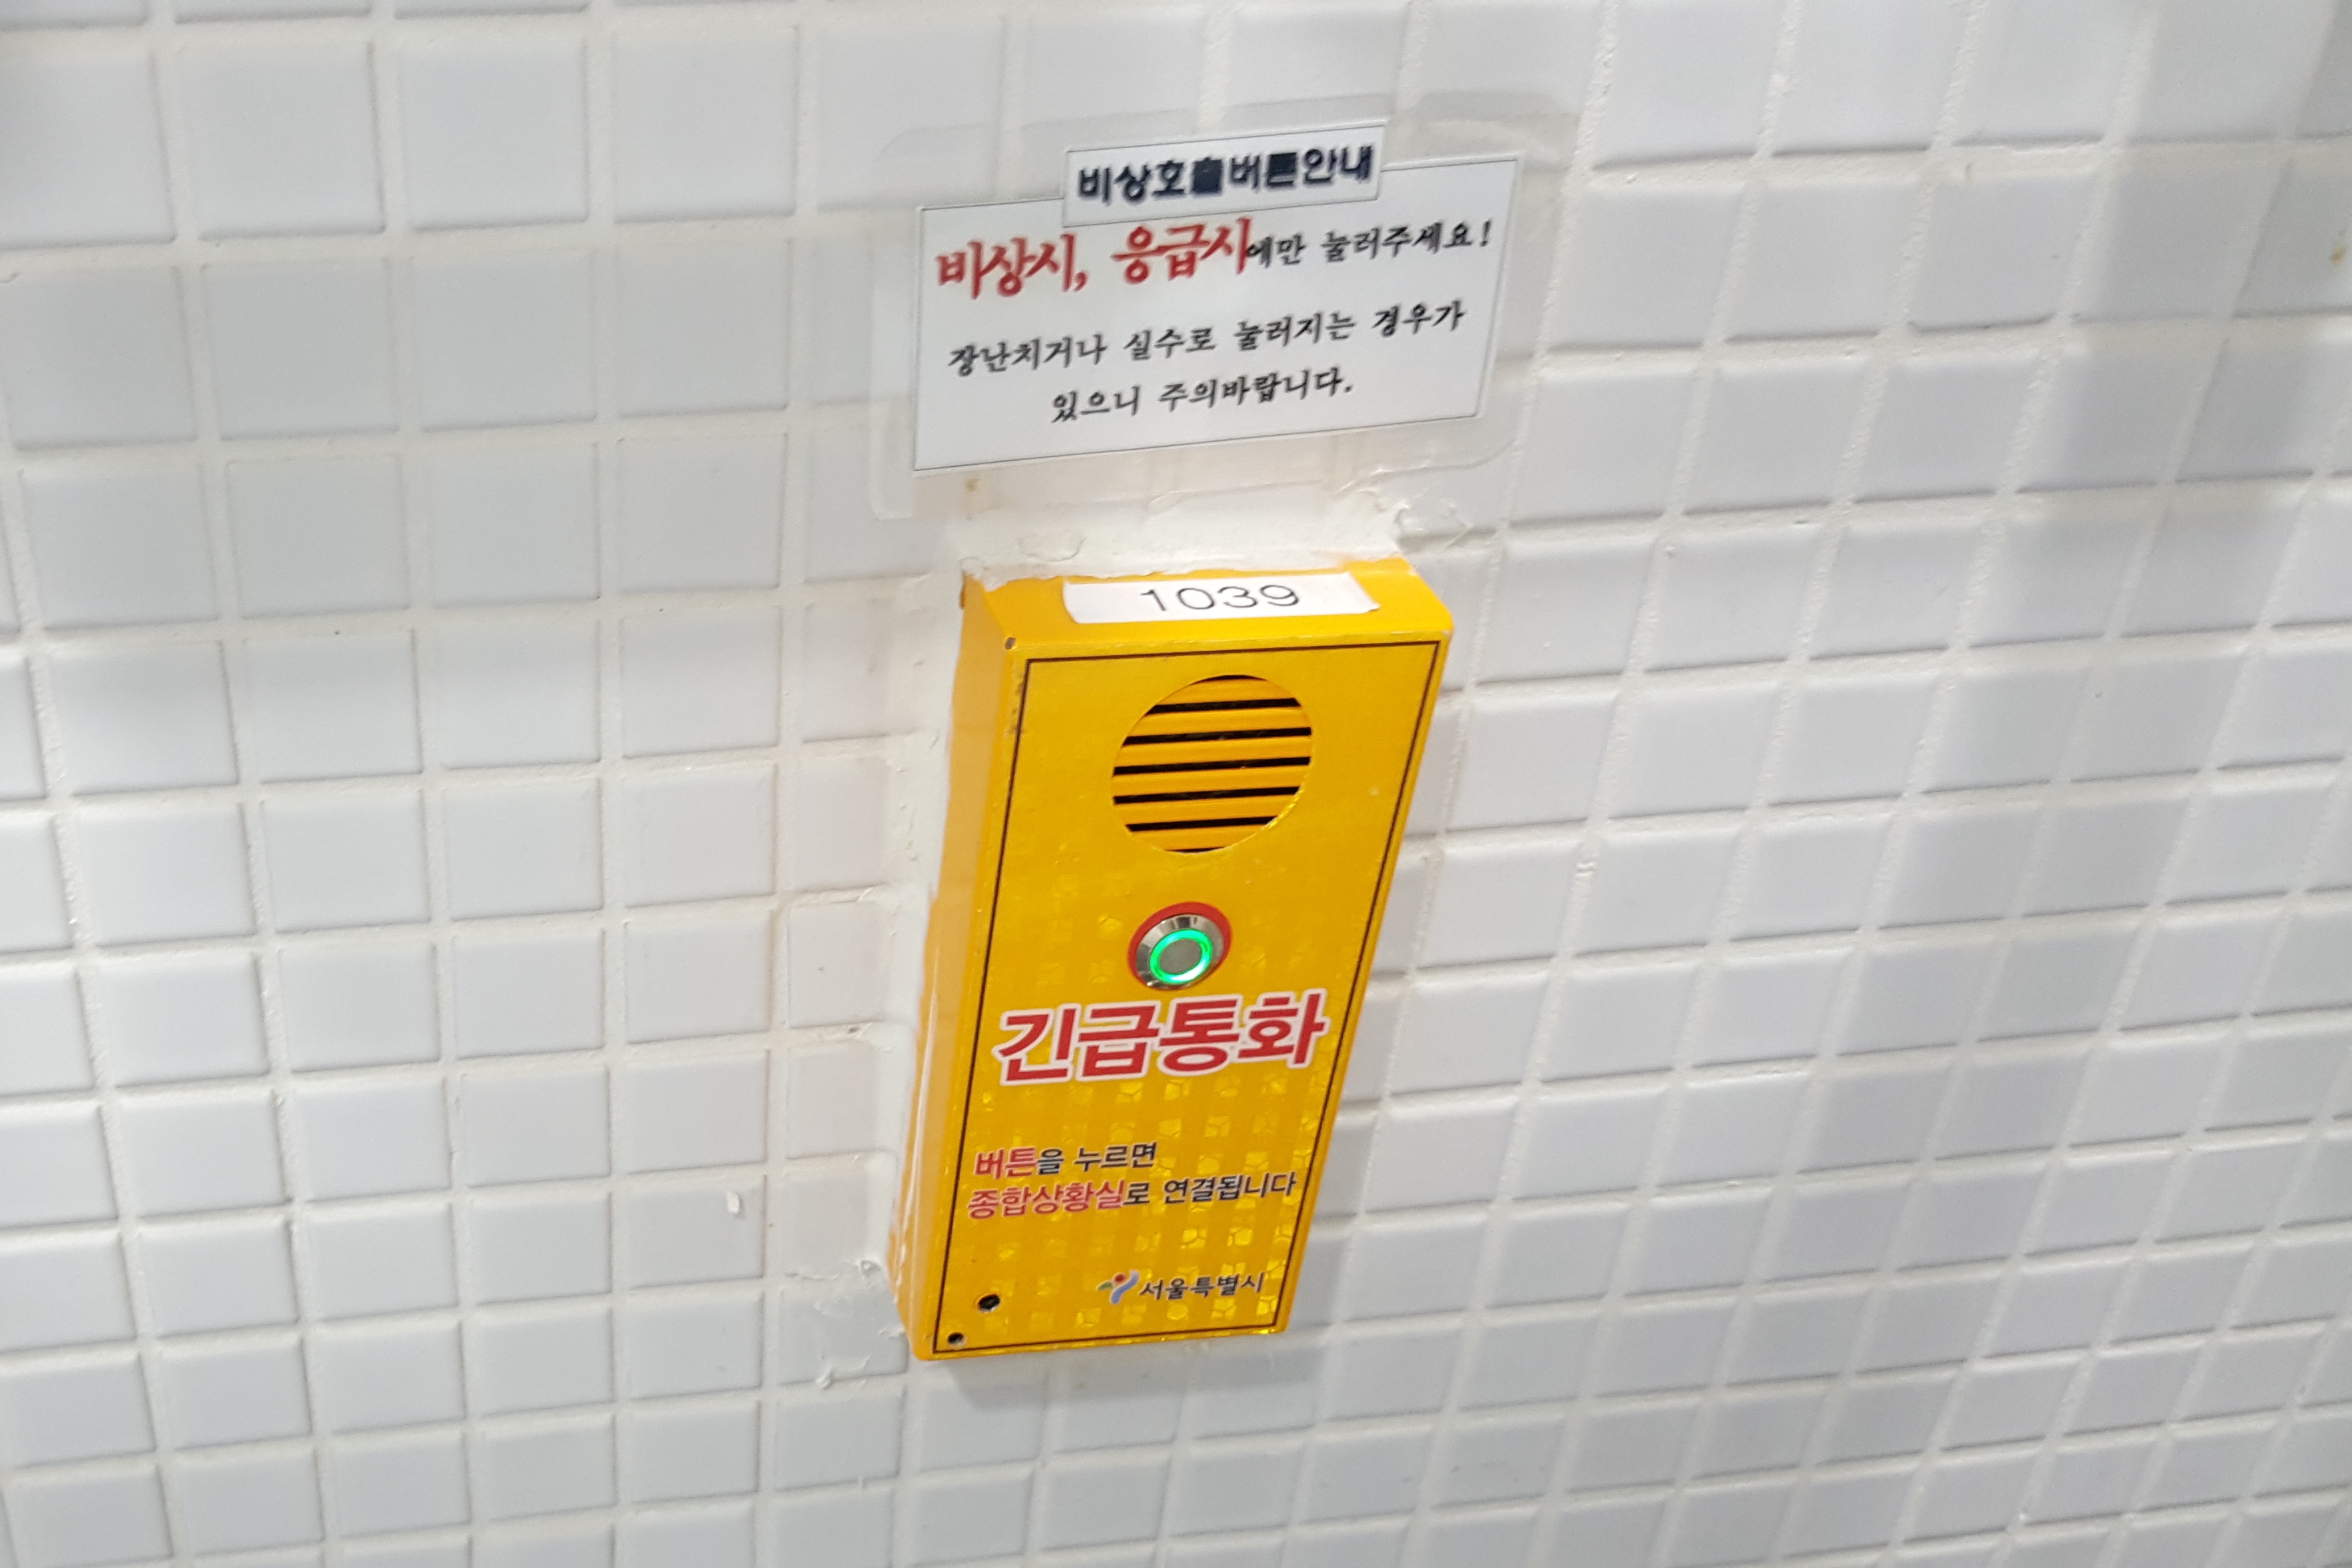 장애인 화장실0 : 서울도서관 장애인화장실 내 비치된 긴급통화버튼